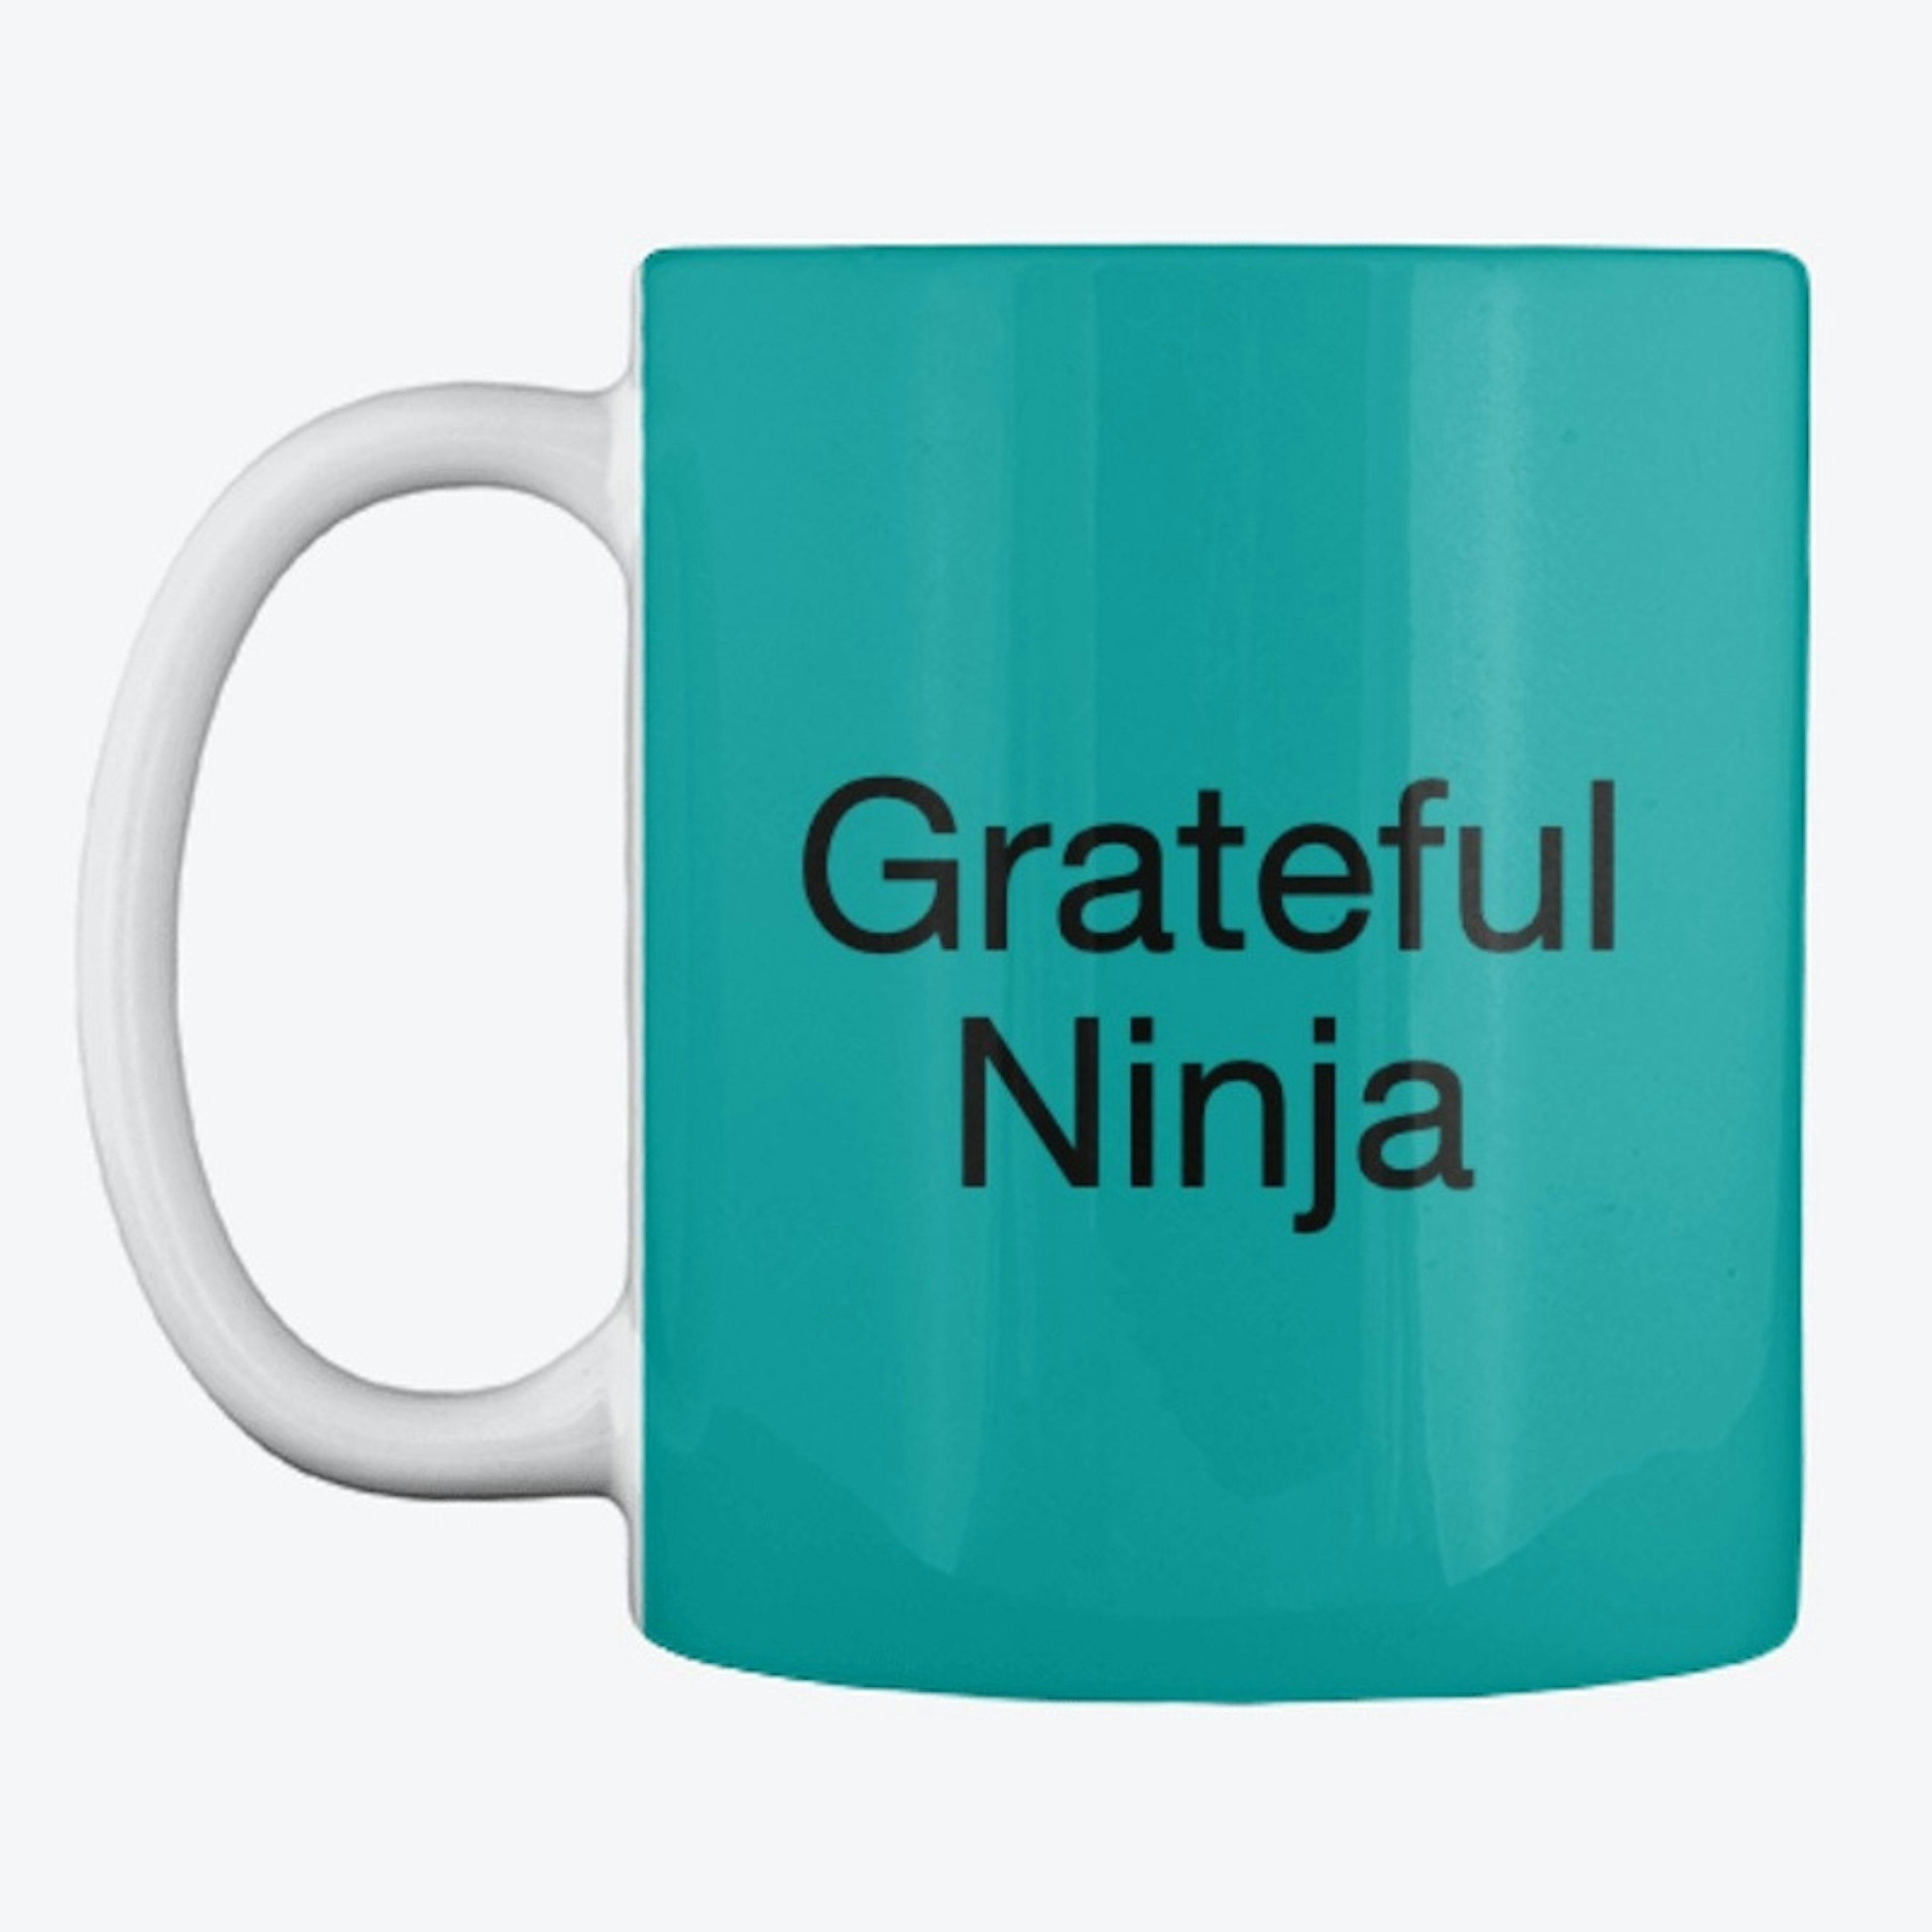 Grateful Ninja Mug